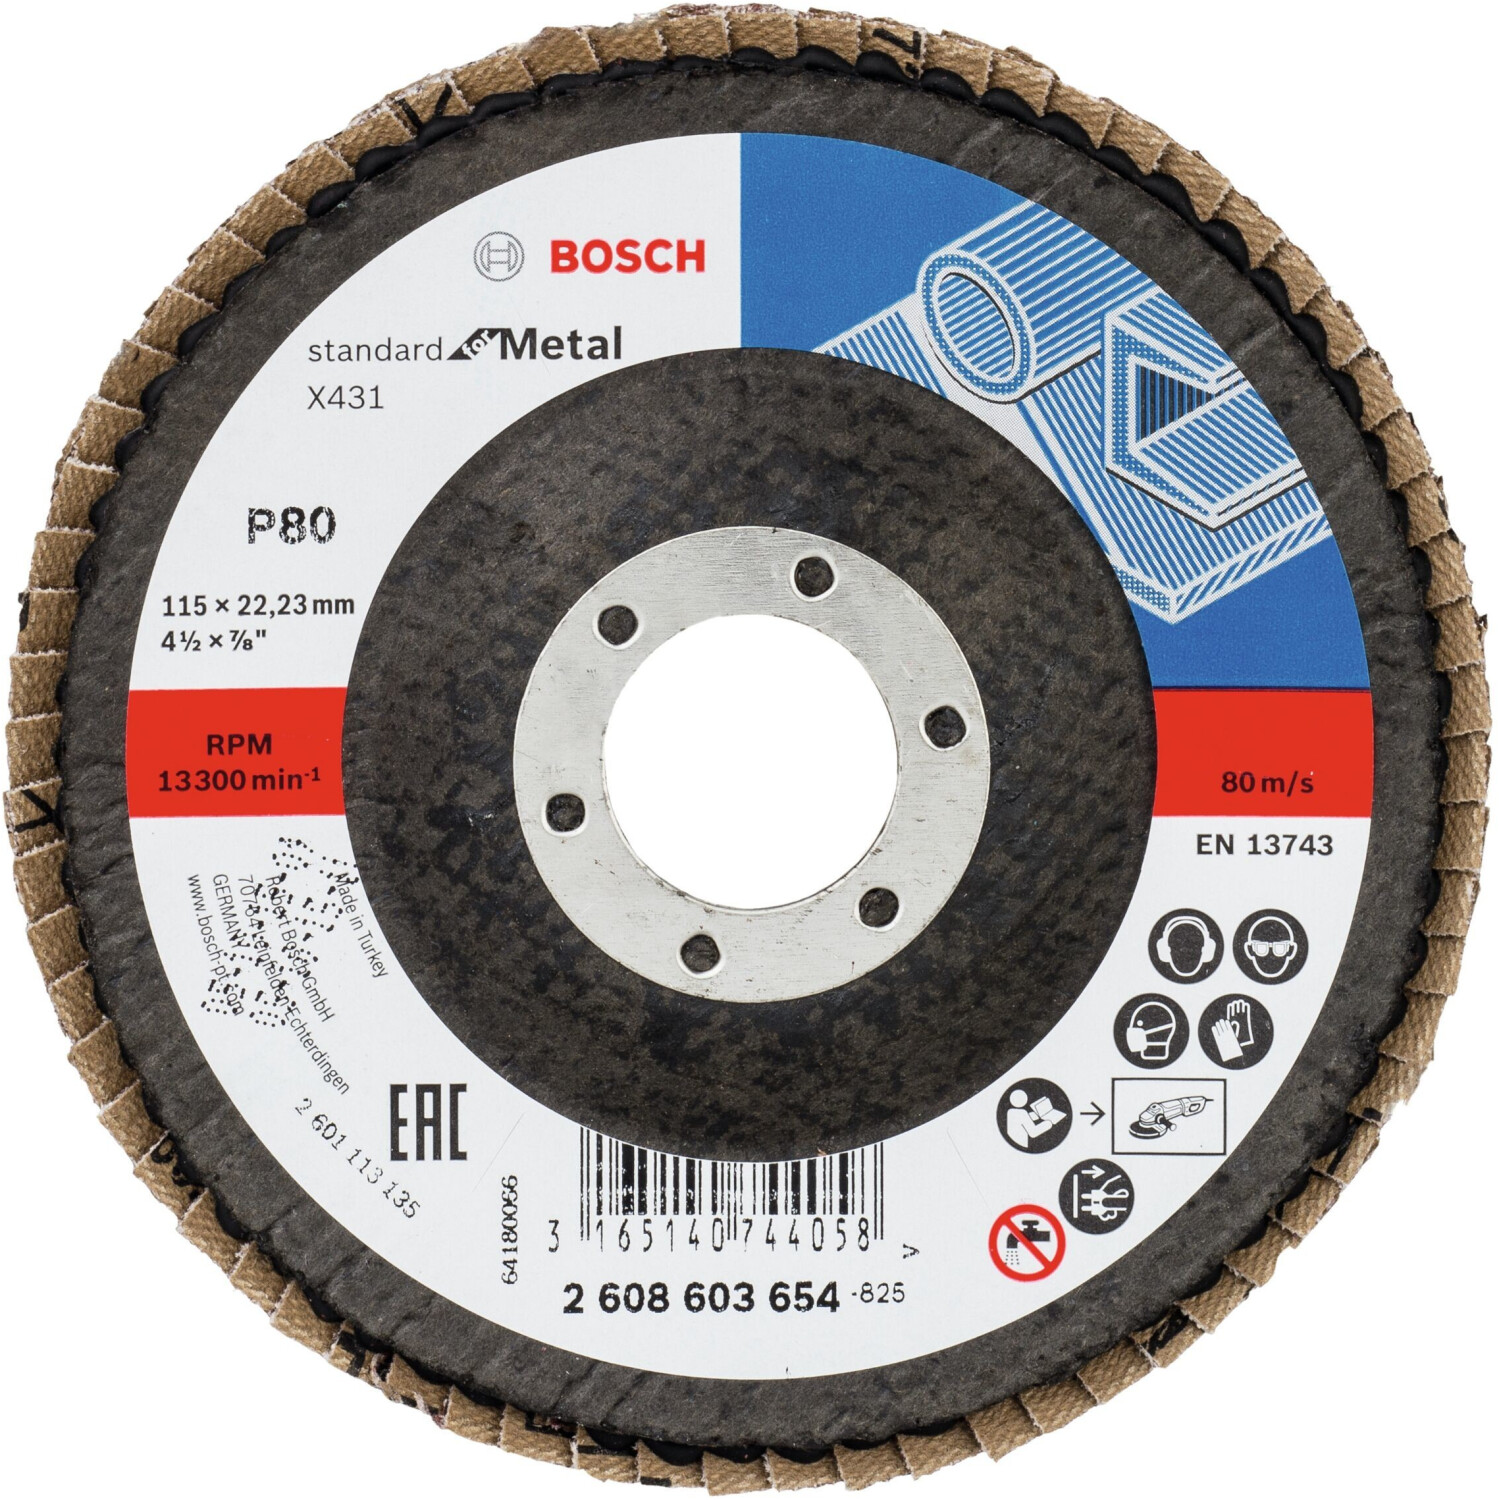 Photos - Abrasive Wheel / Belt Bosch X431 Standard for Metal - K80 D115  (2608603654)